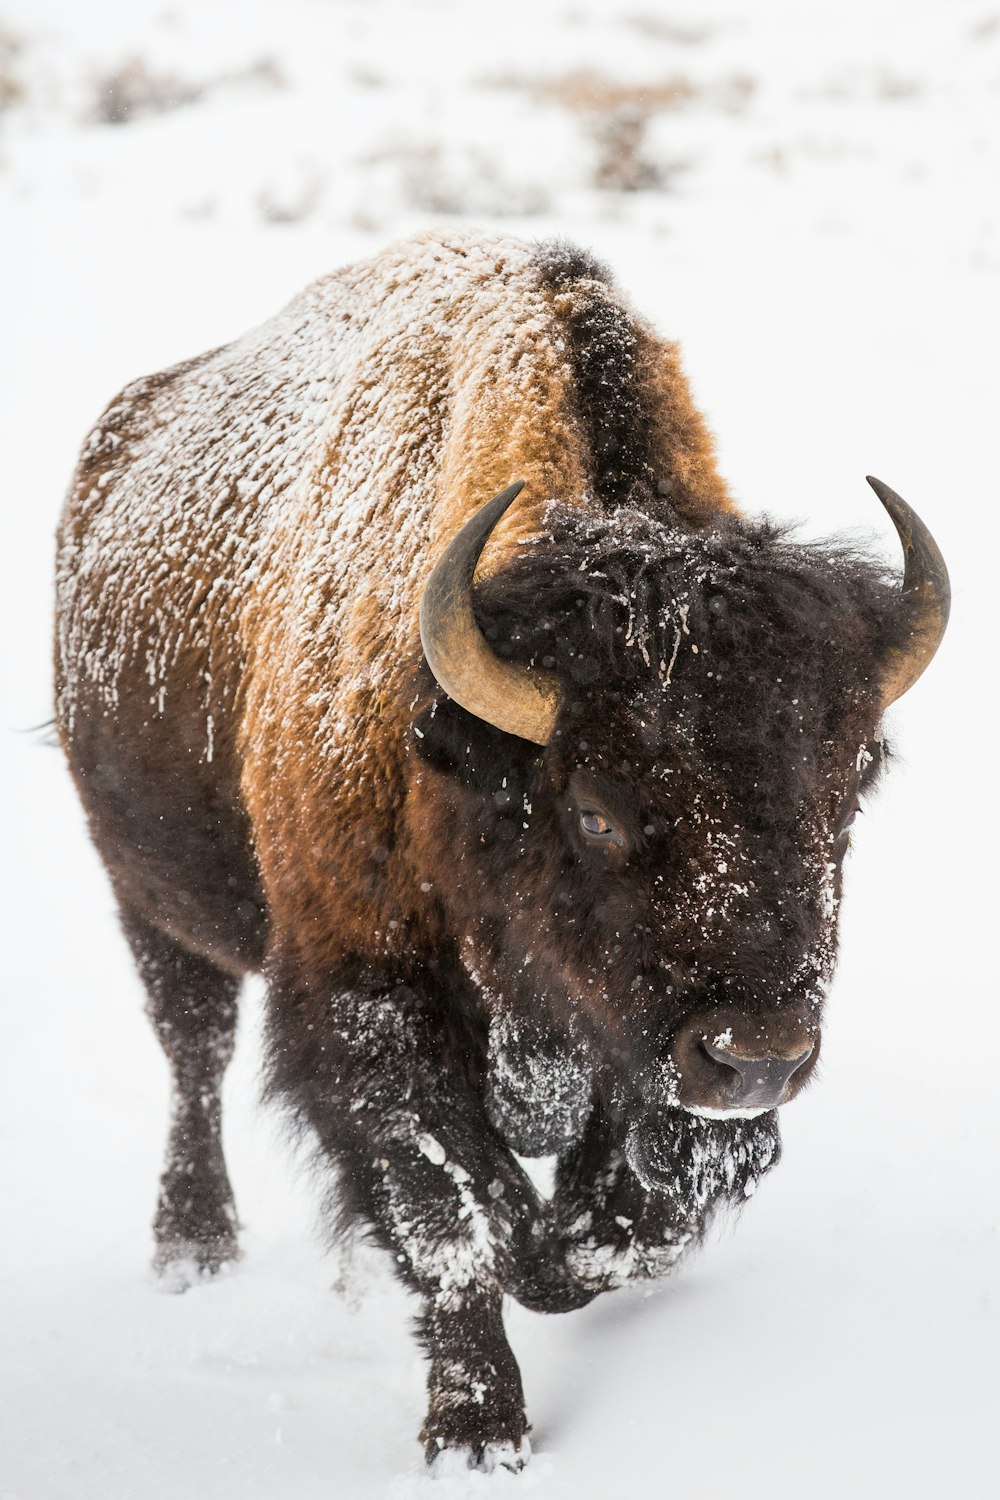 bisão marrom no chão coberto de neve branca durante o dia